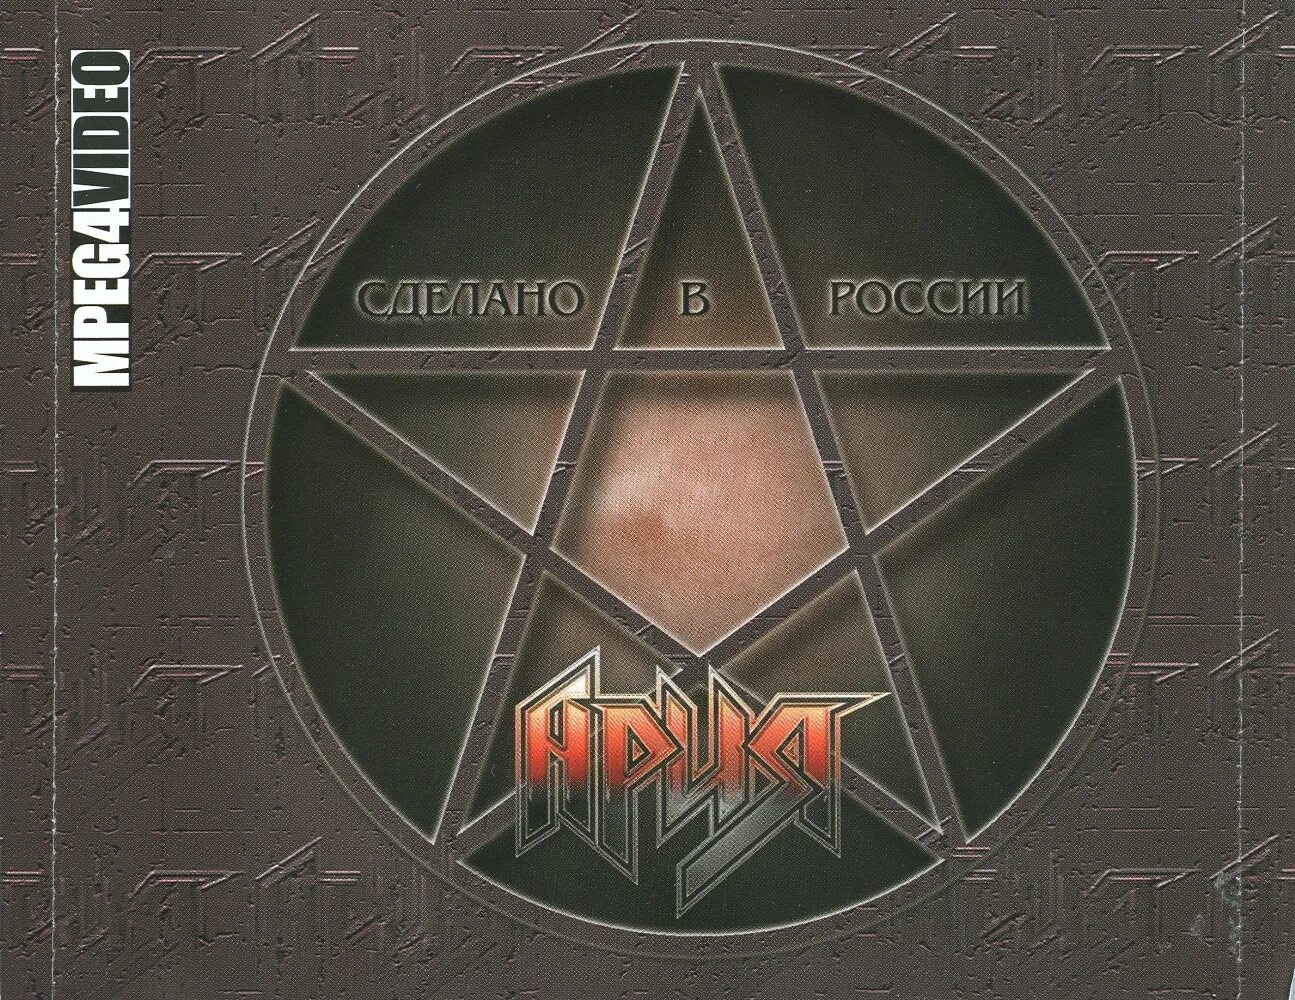 Ария сделано. Ария 1996. Ария сделано в России альбом. Ария сделано в России 1997. Ария сделано в России концерт.